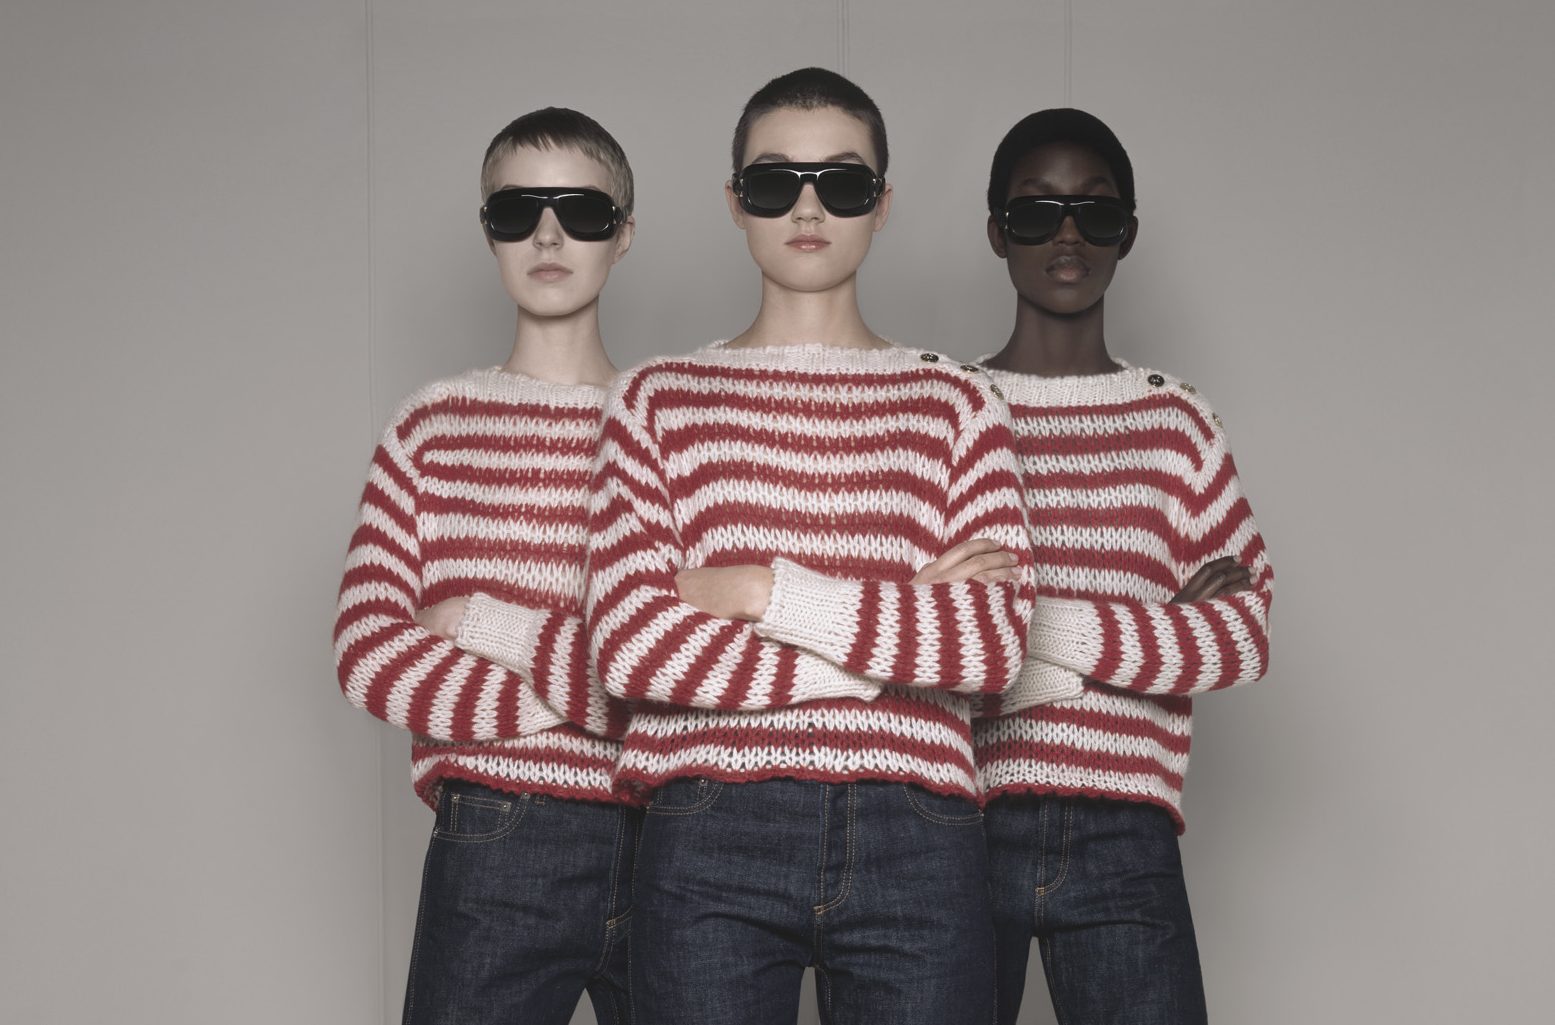 Dior lanza su nueva colección “Dior 8”